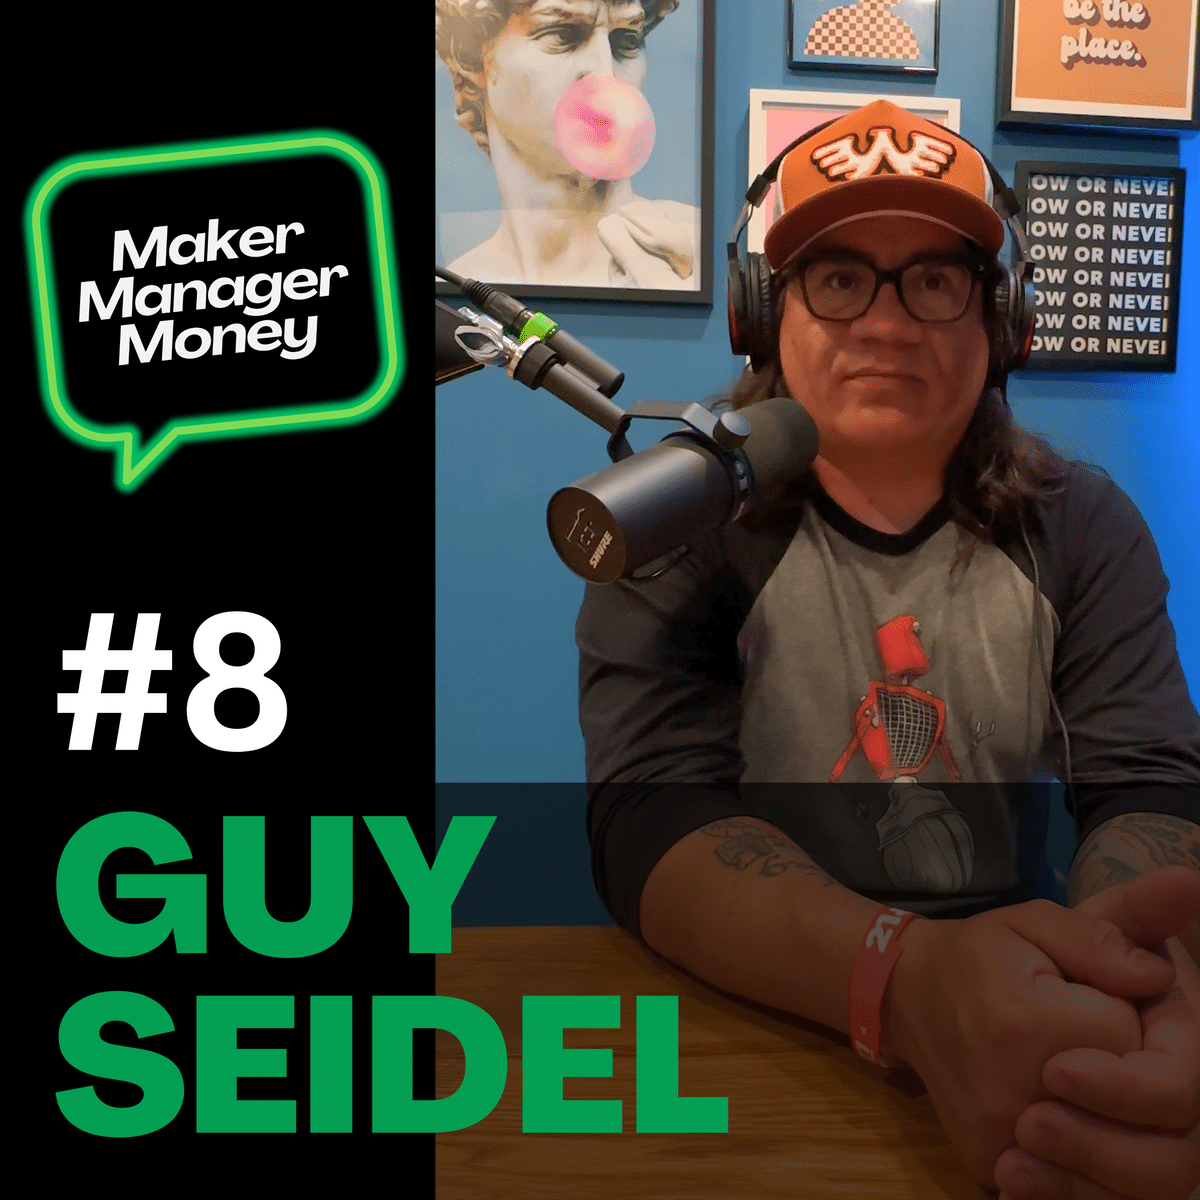 Guy Seidel – entertaining guitarist, comedian, & entrepreneur